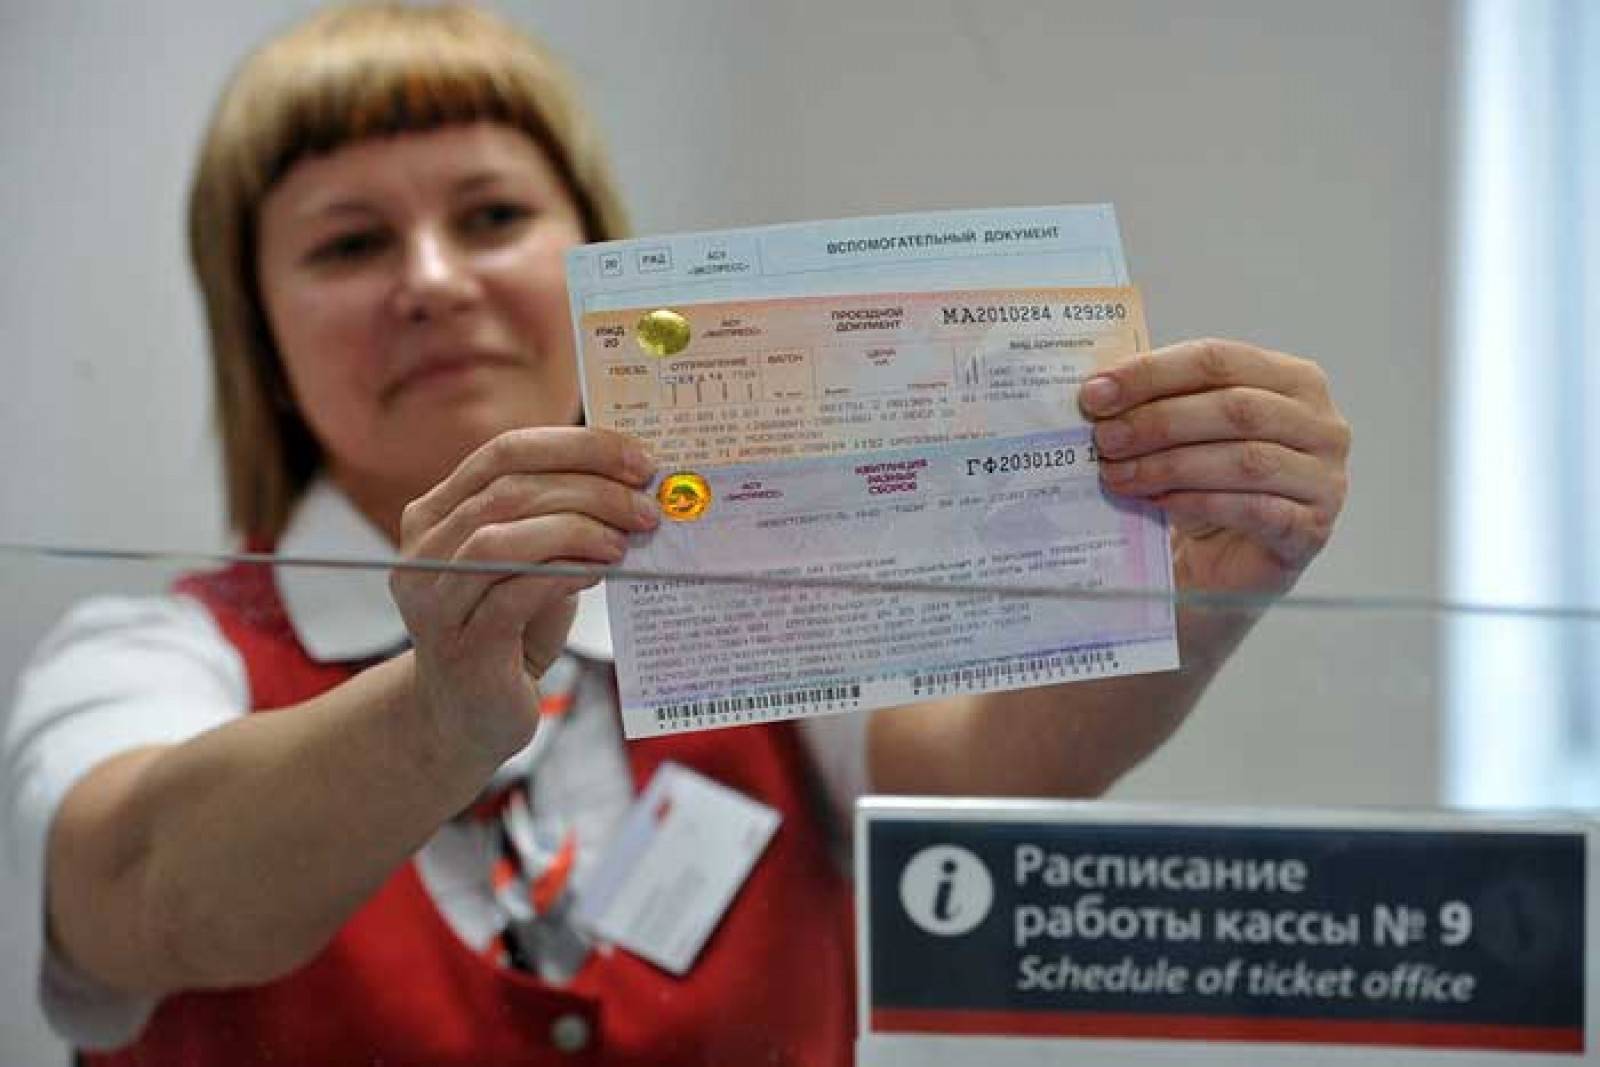 Как добраться в крым: самолет, автомобиль, автобус, поезд, единый билет и смешанные маршруты